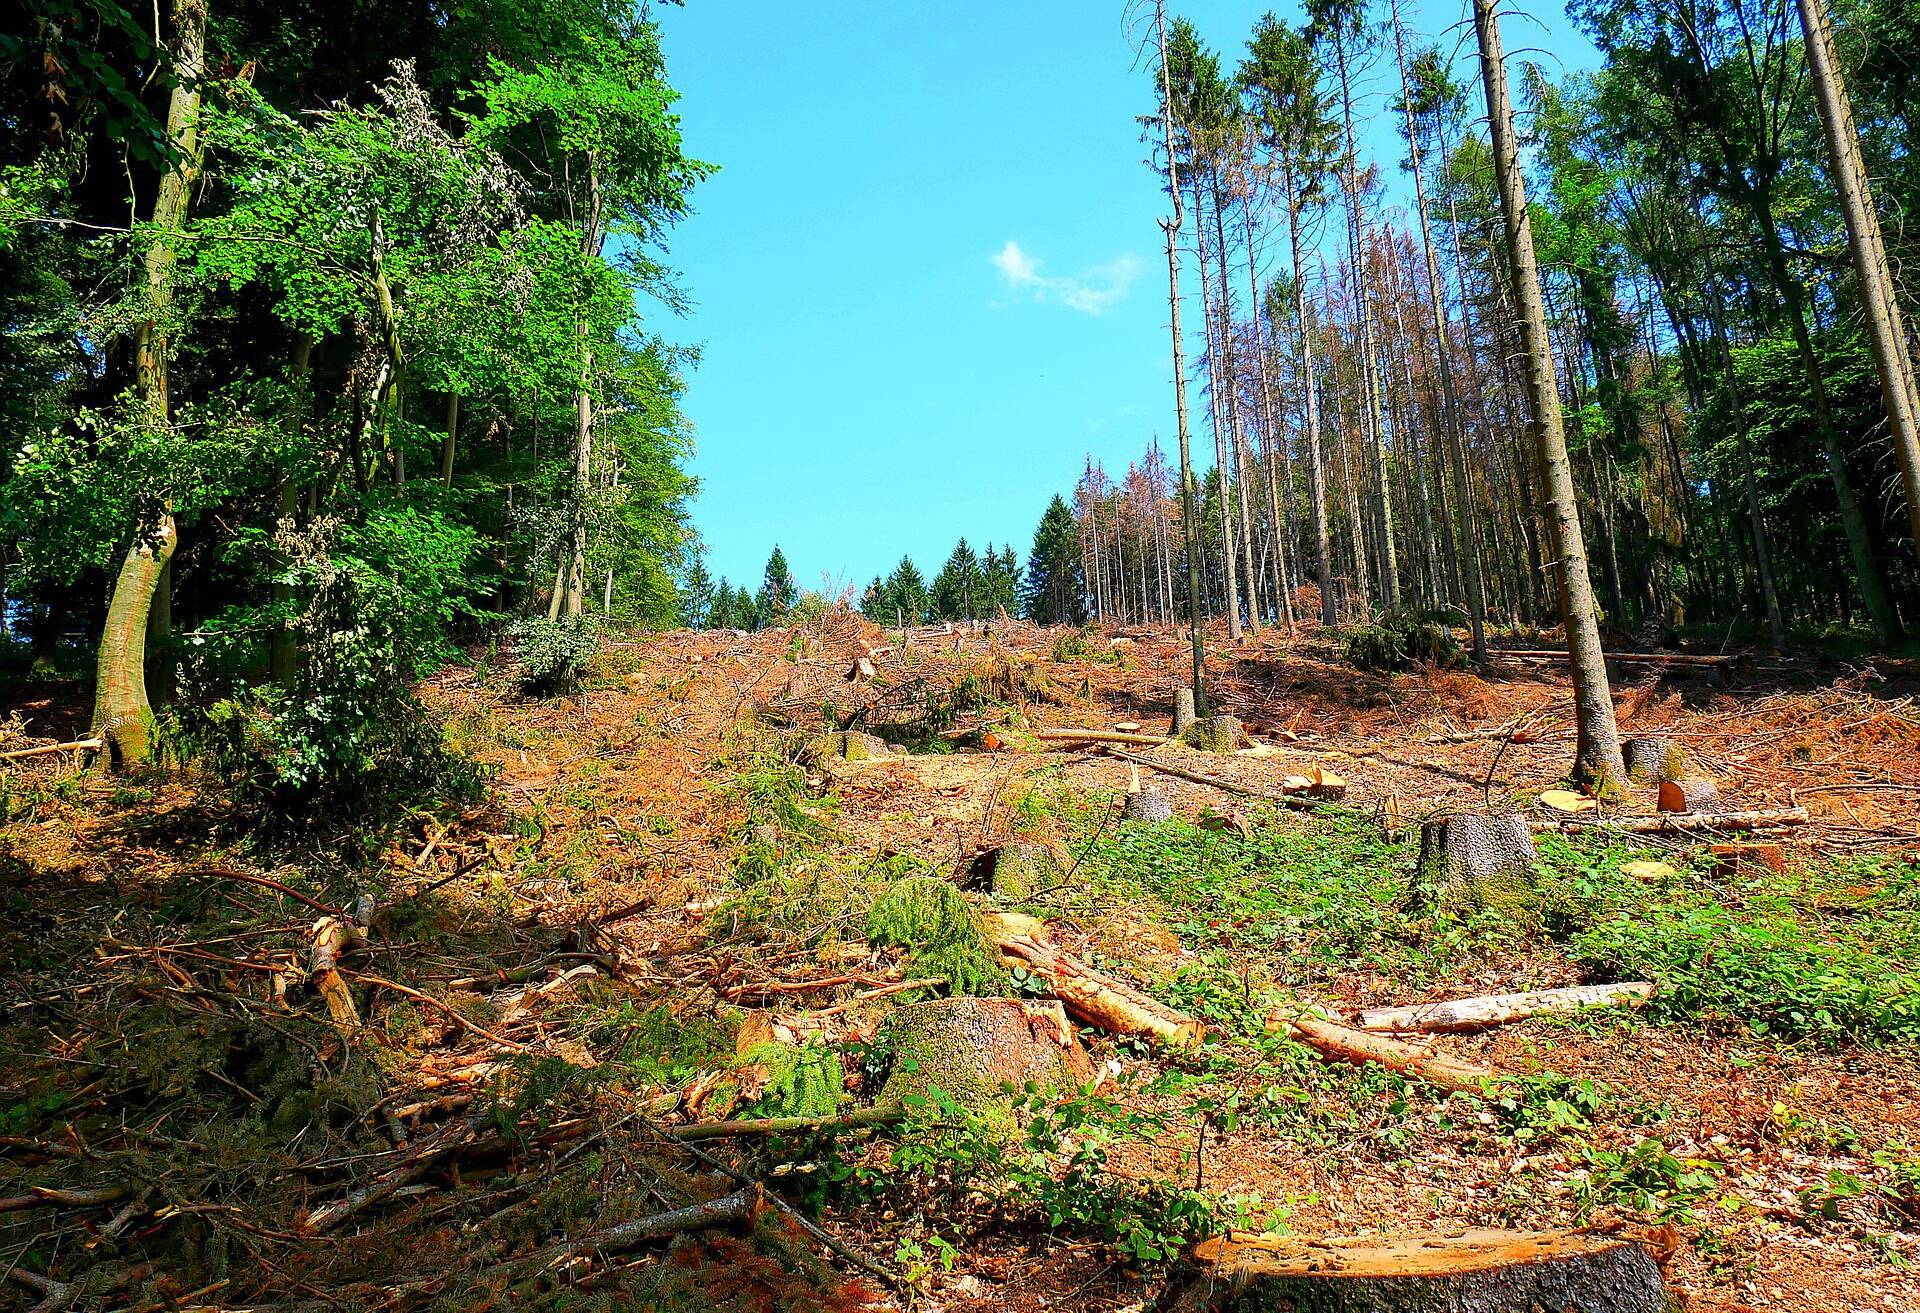 Viele Waldgebiete sind inzwischen stark angegriffen.